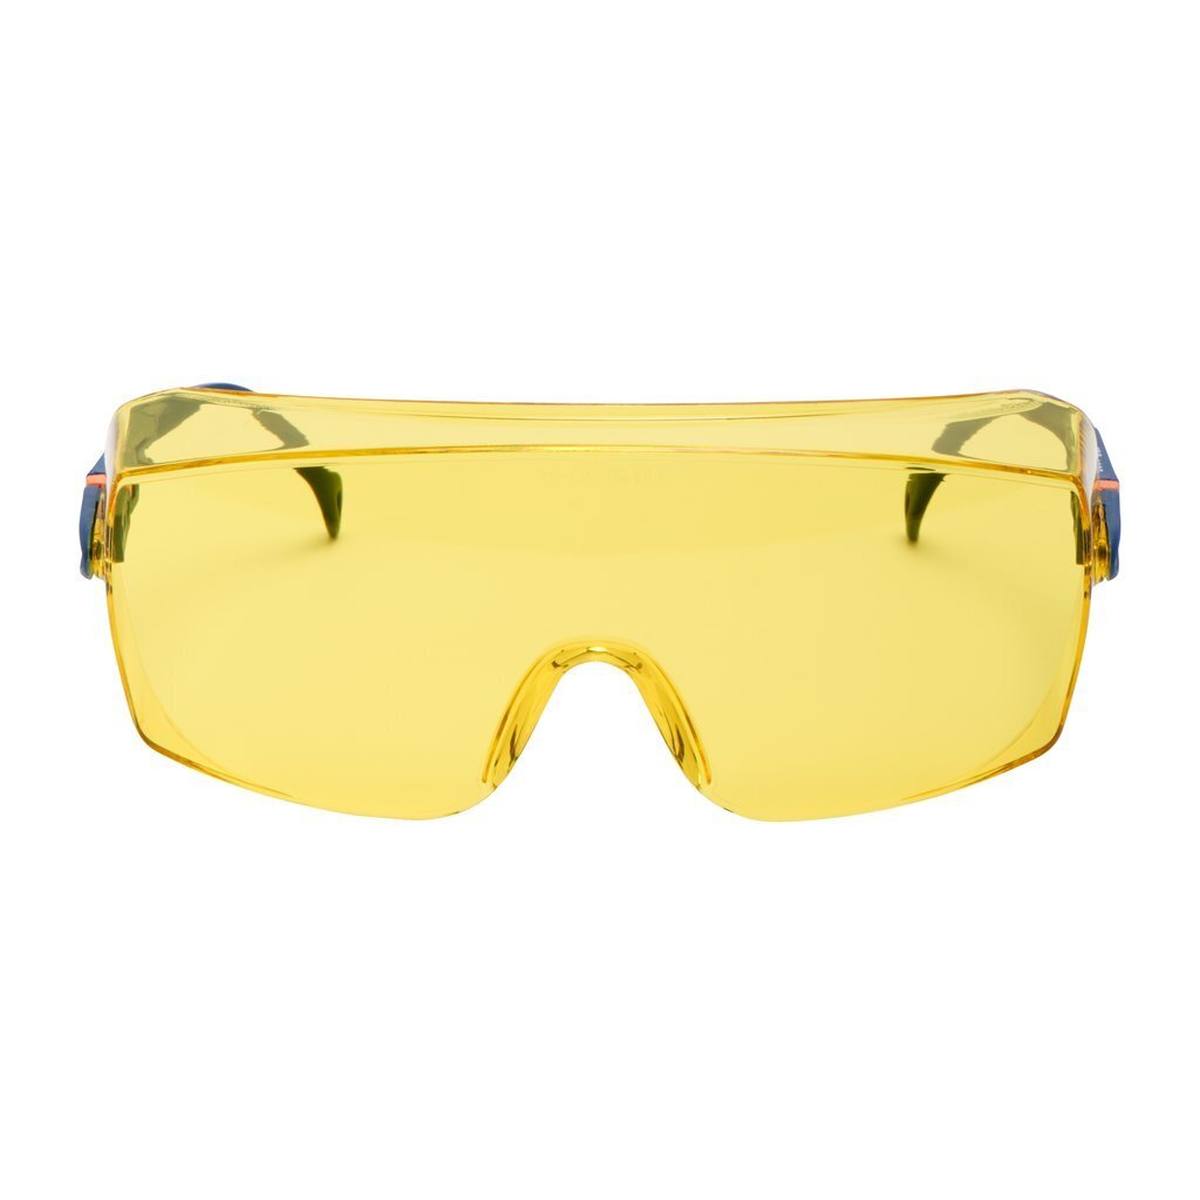 3M 2802 Lunettes de protection AS/UV, PC, teintées jaune, réglables, idéales comme surlunettes pour les porteurs de lunettes